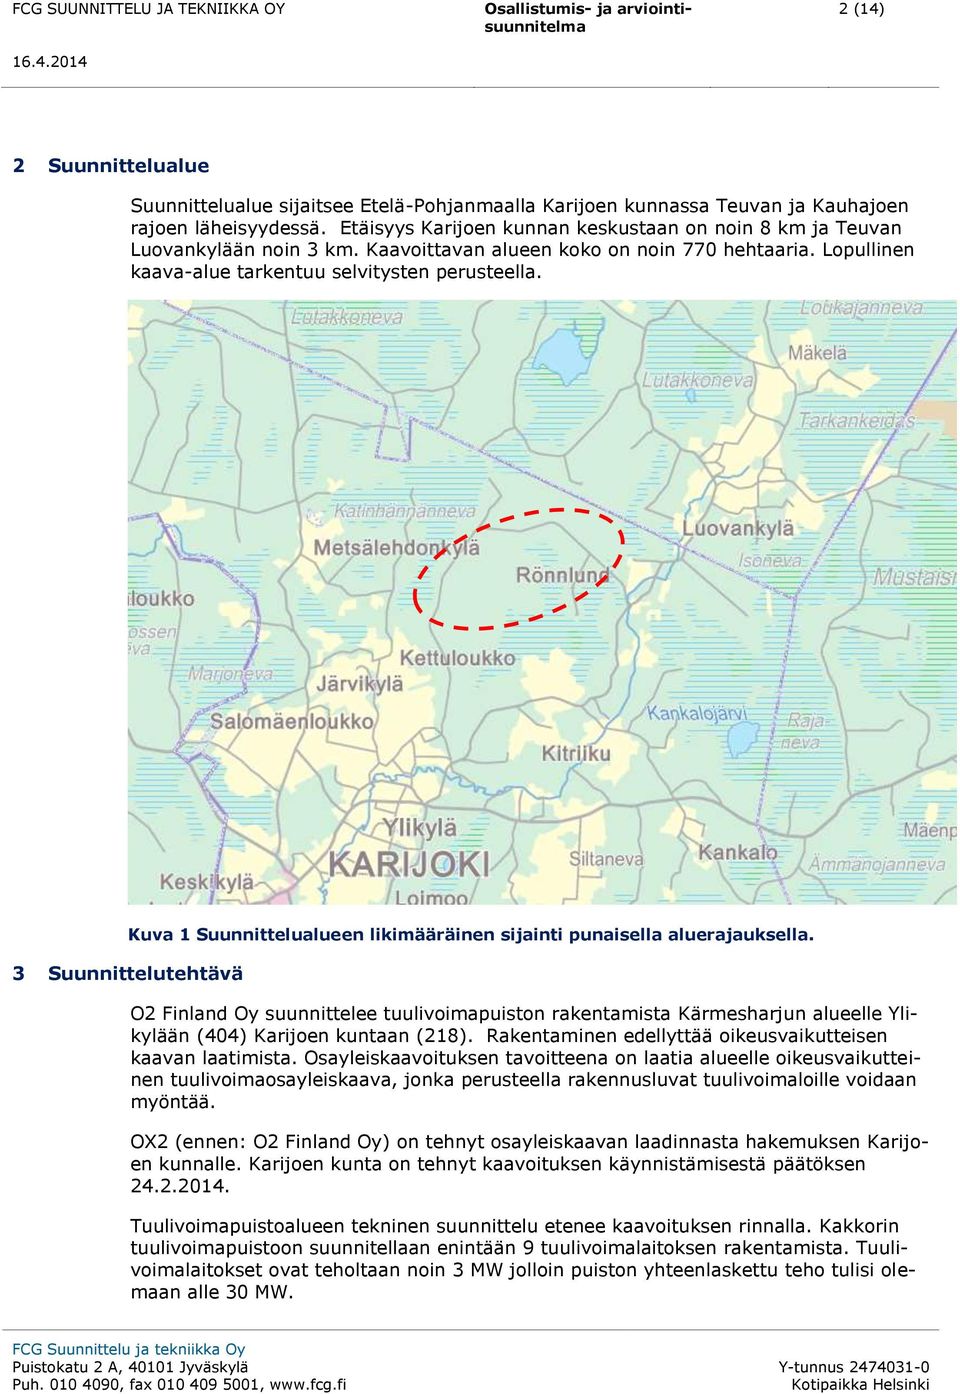 3 Suunnittelutehtävä Kuva 1 Suunnittelualueen likimääräinen sijainti punaisella aluerajauksella.